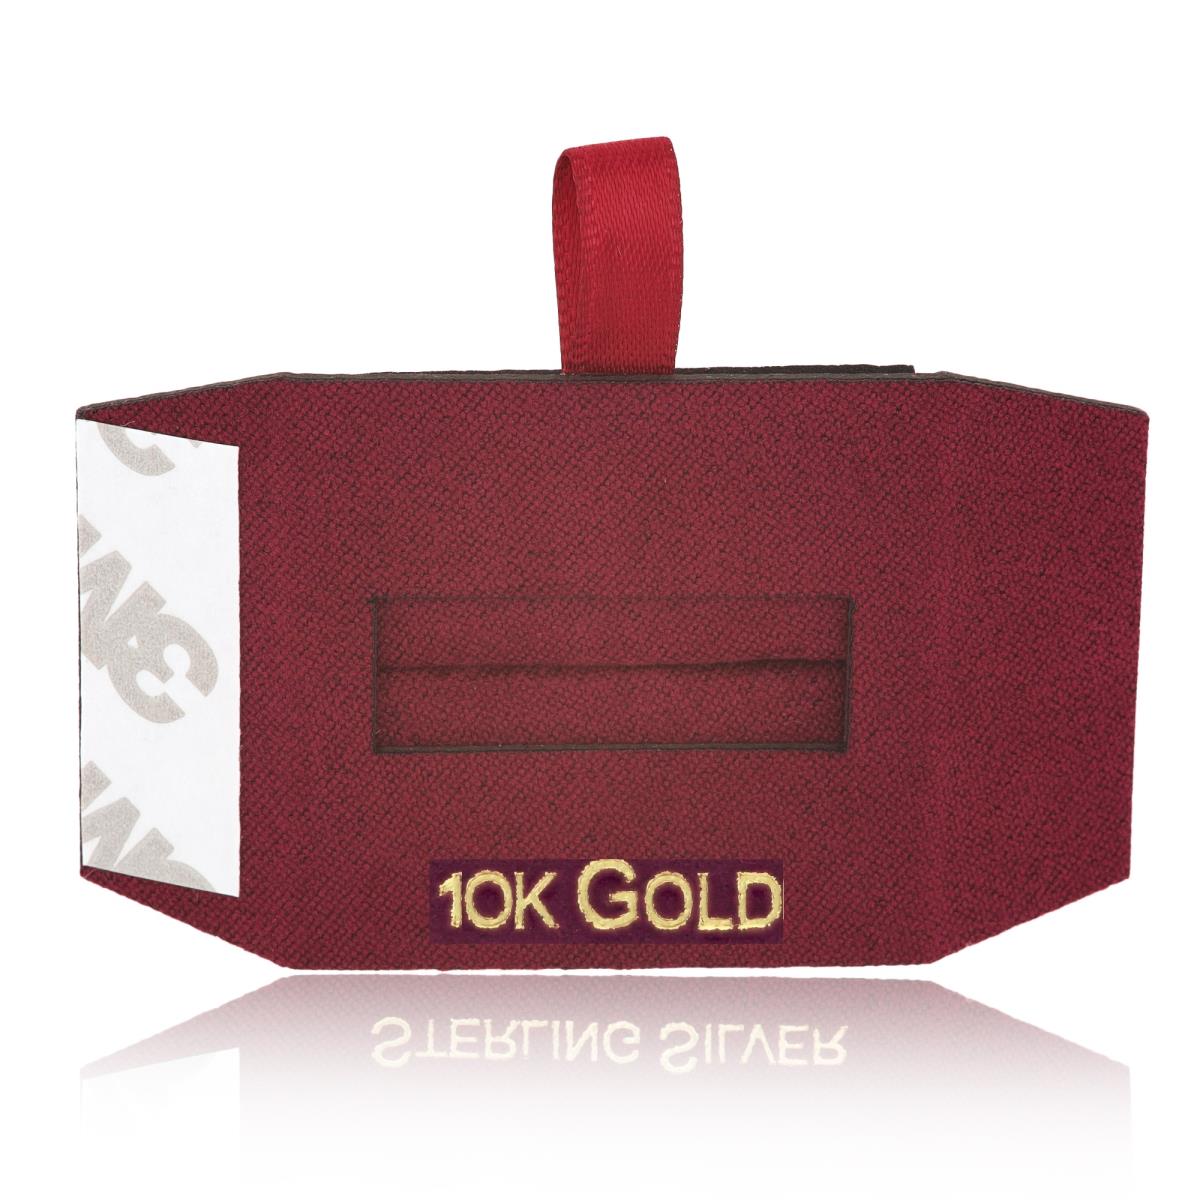 Wine 10K GOLD, Gold Foil Ring Insert (Box B06-159/Wine/D)